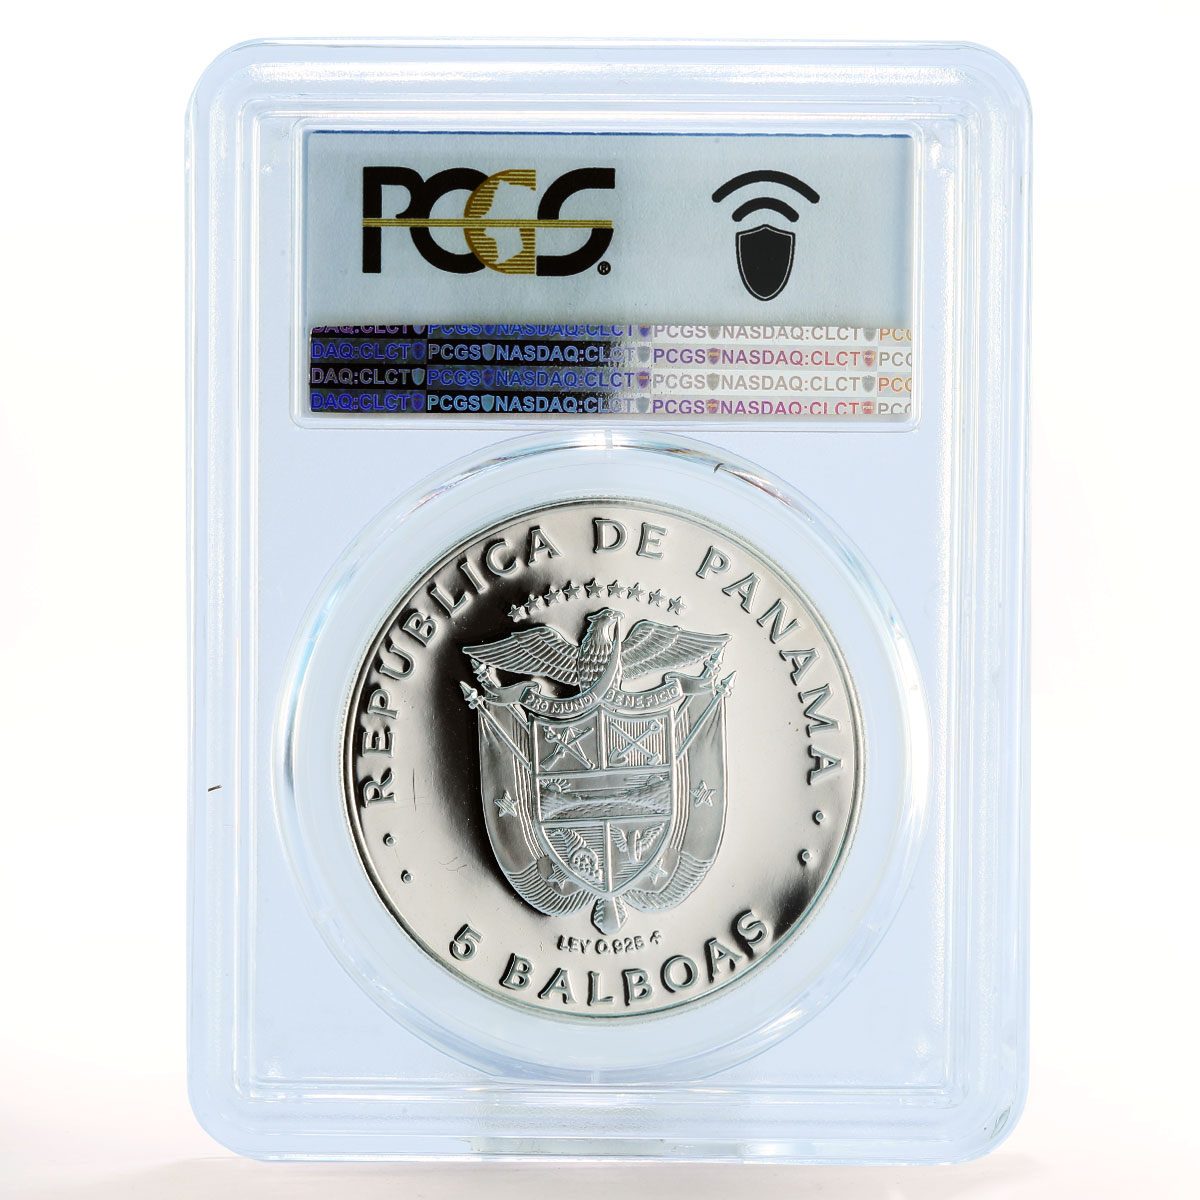 Panama 5 balboas President Belisario Porras PR69 PCGS silver coin 1975